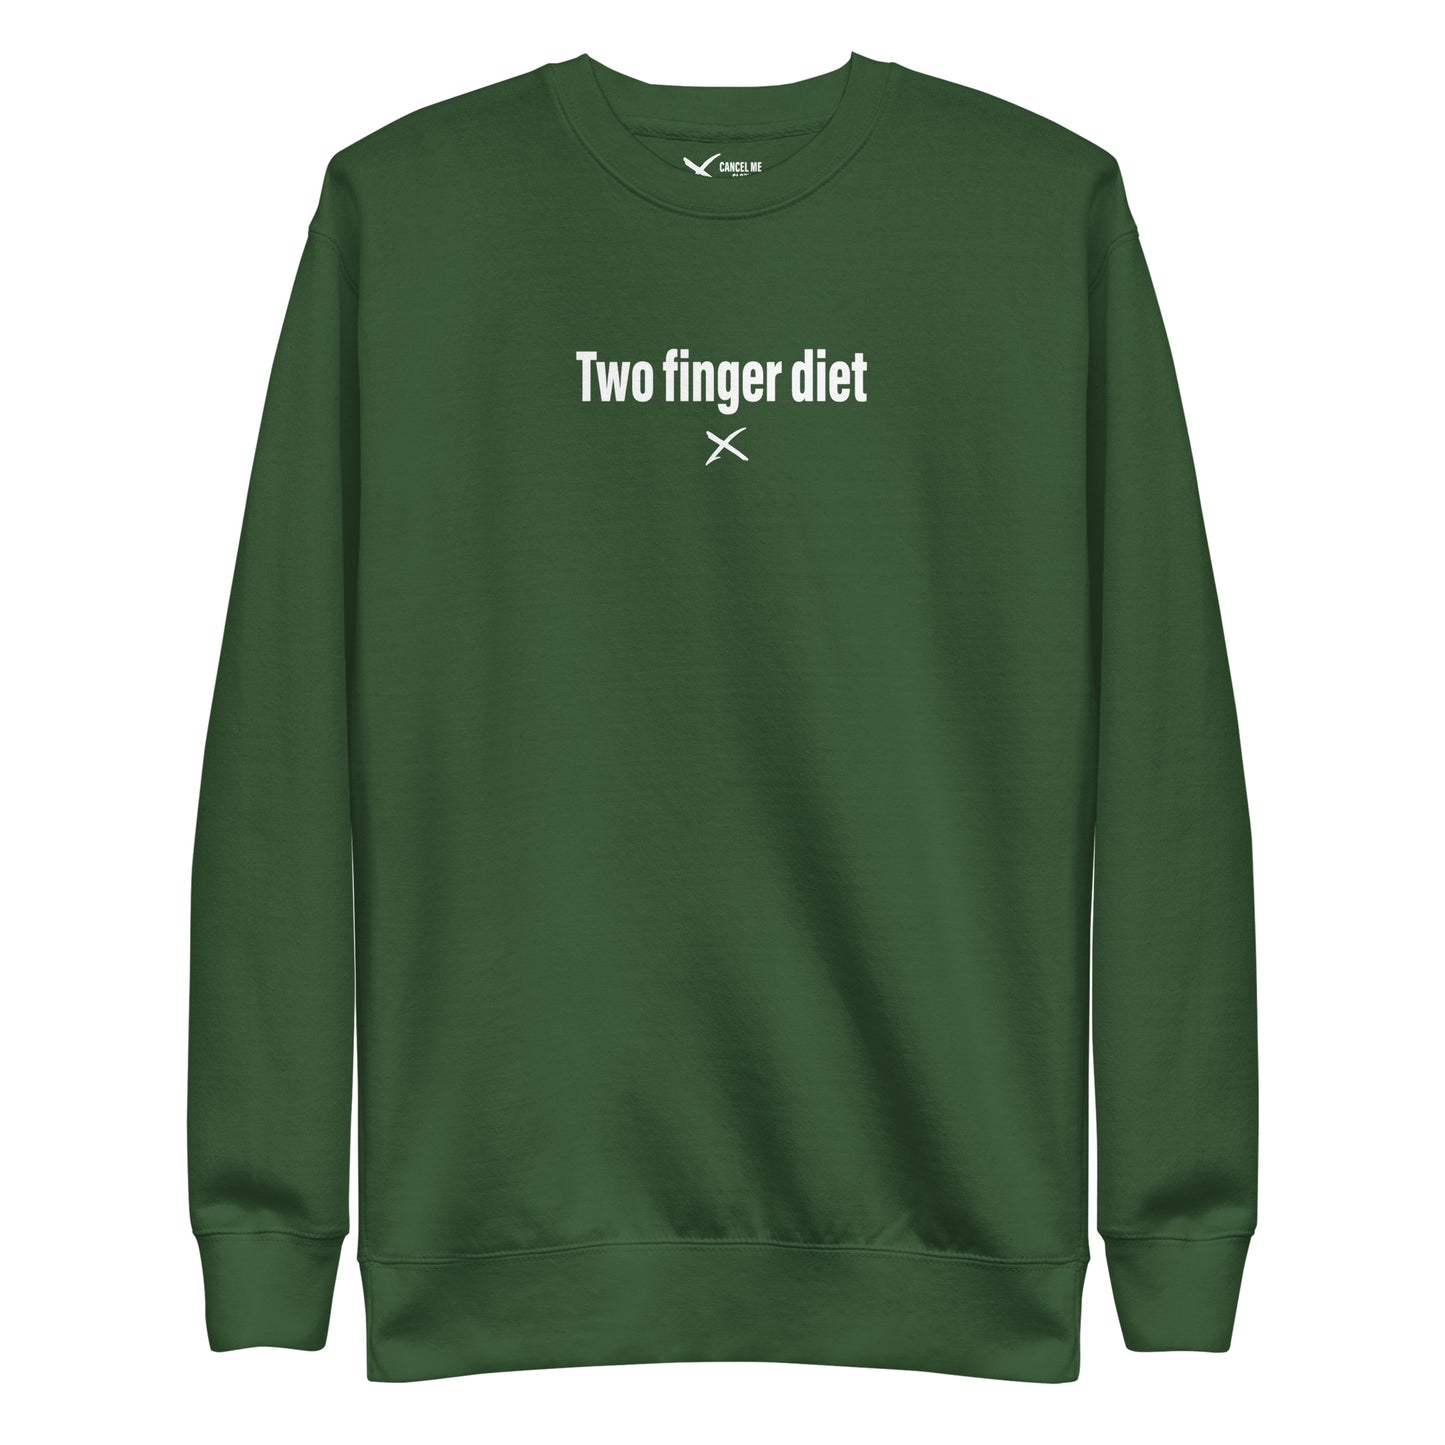 Two finger diet - Sweatshirt